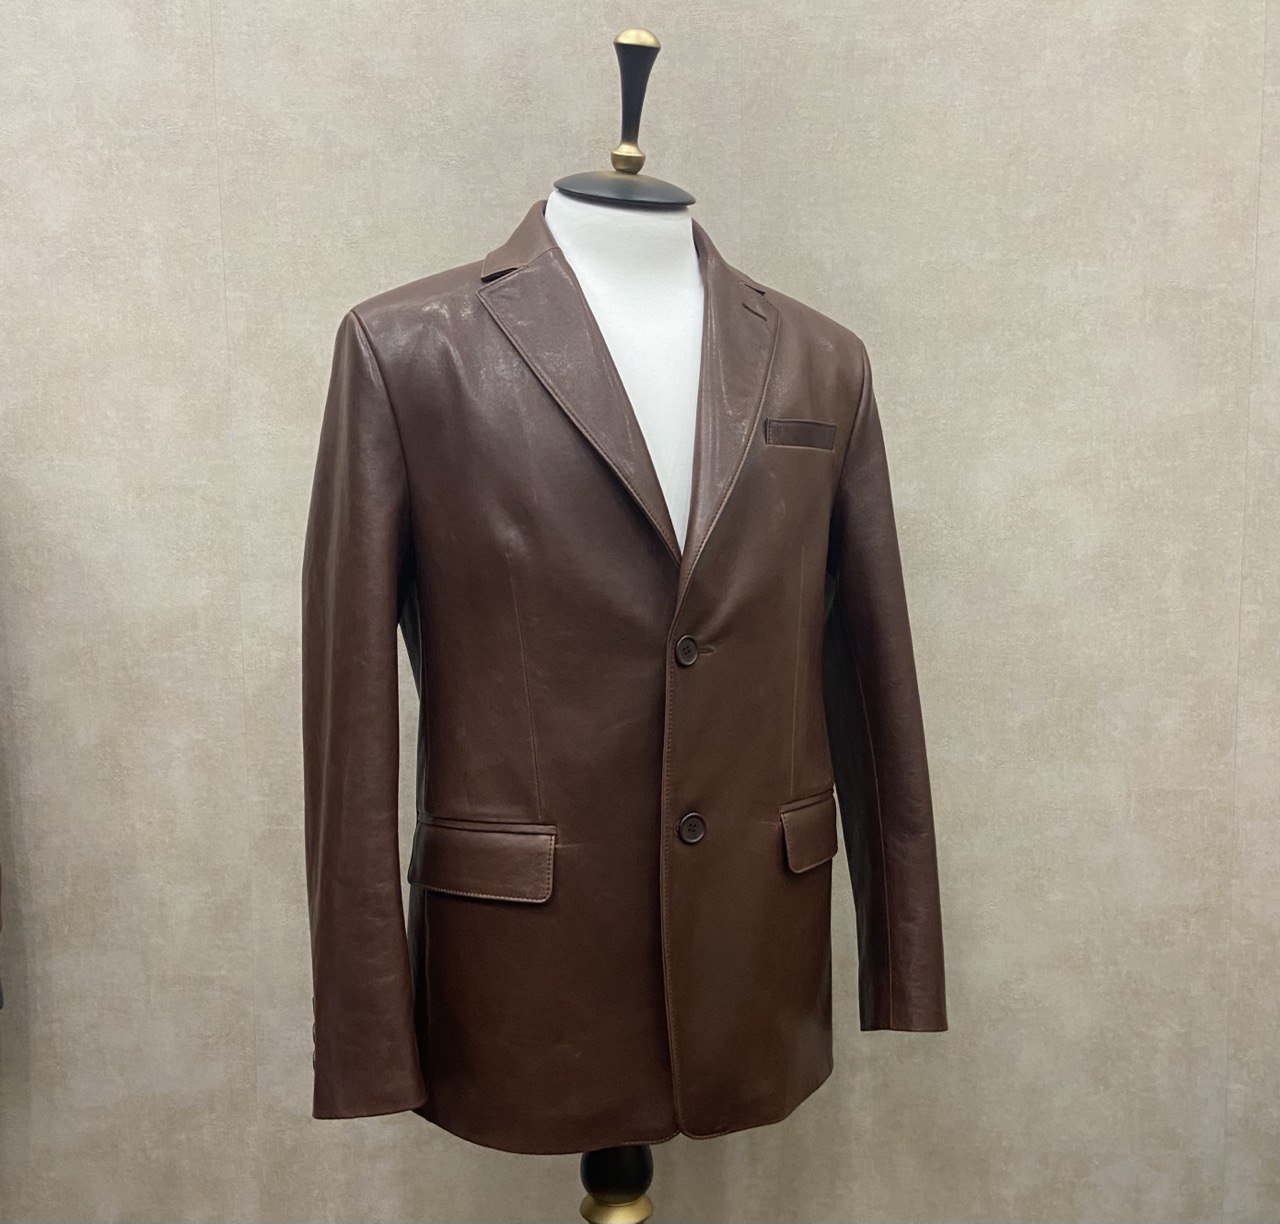 Индивидуальный пошив мужских кожаных пиджаков в ателье VAINER